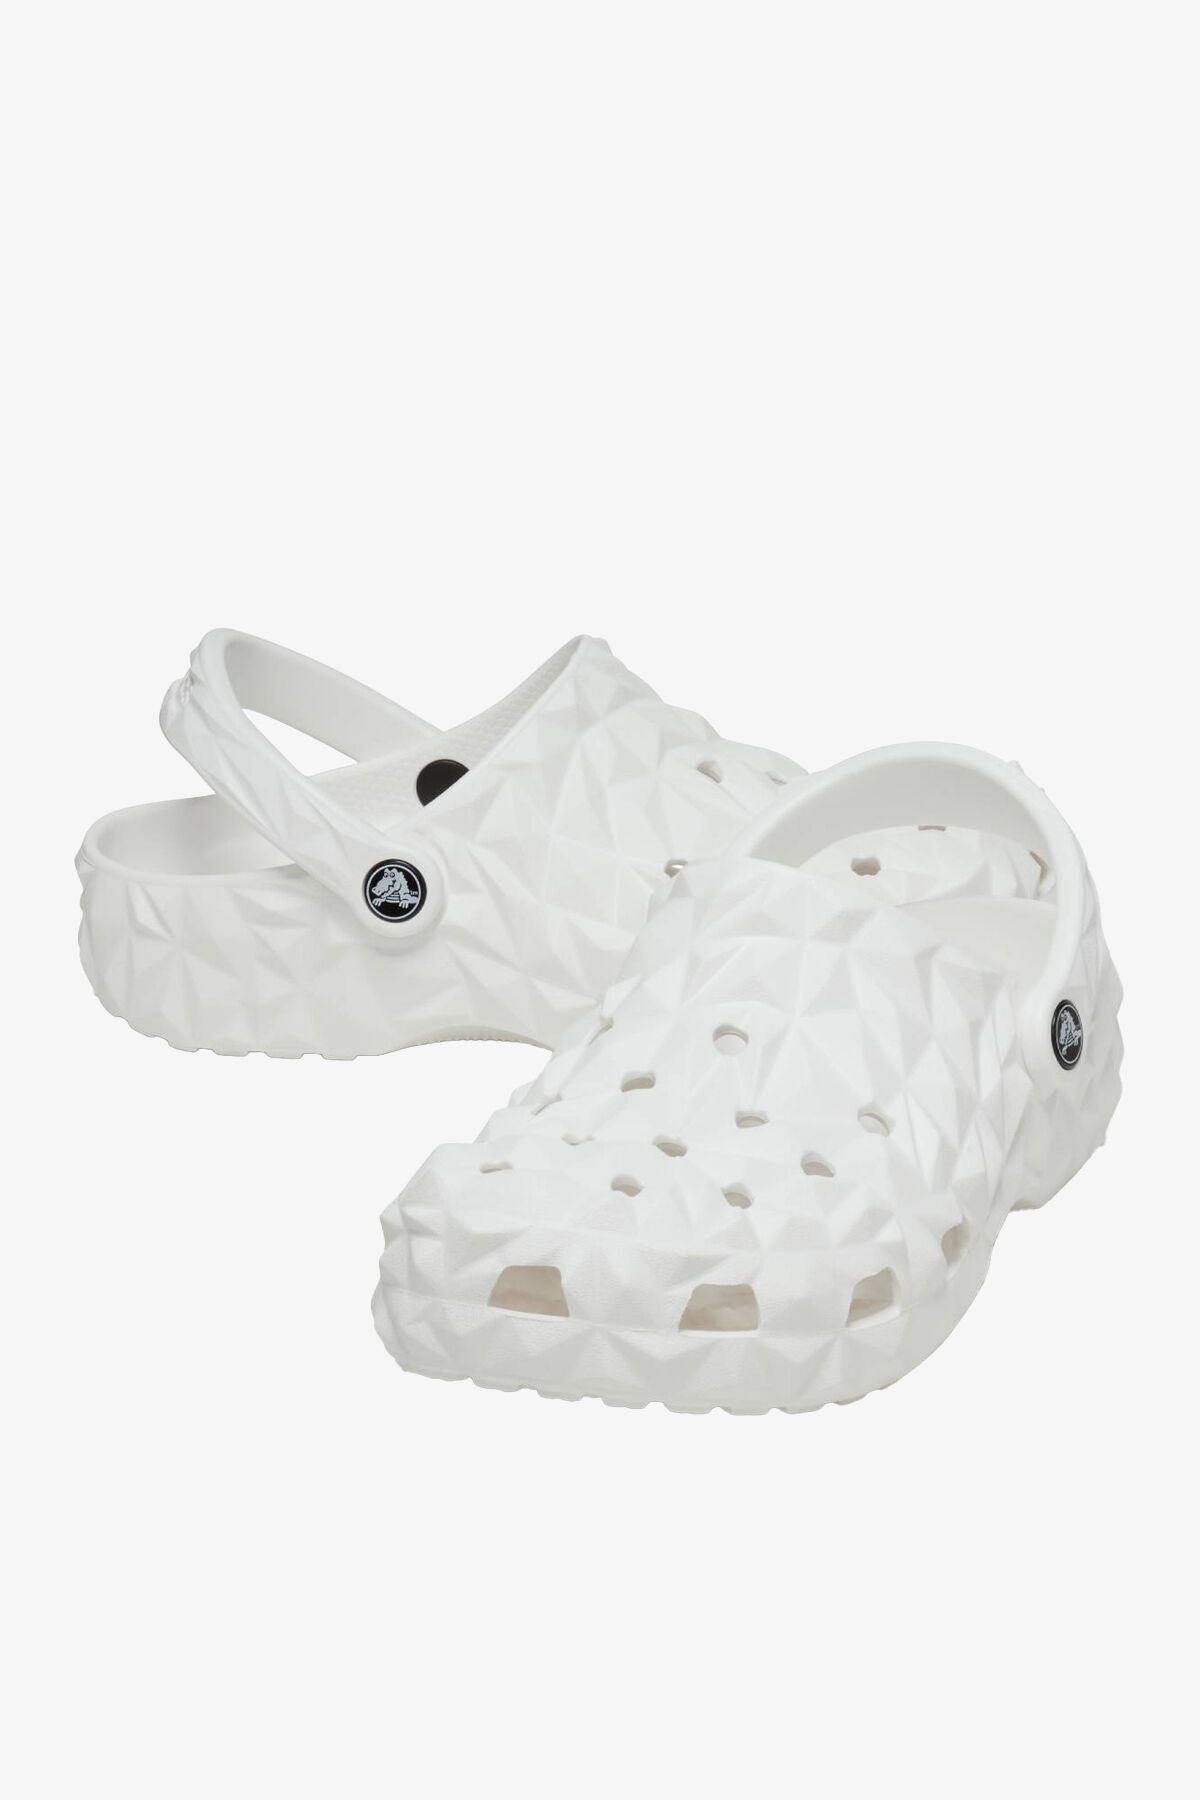 Crocs 209563 Classic Heometric Clog Sandals Unisex